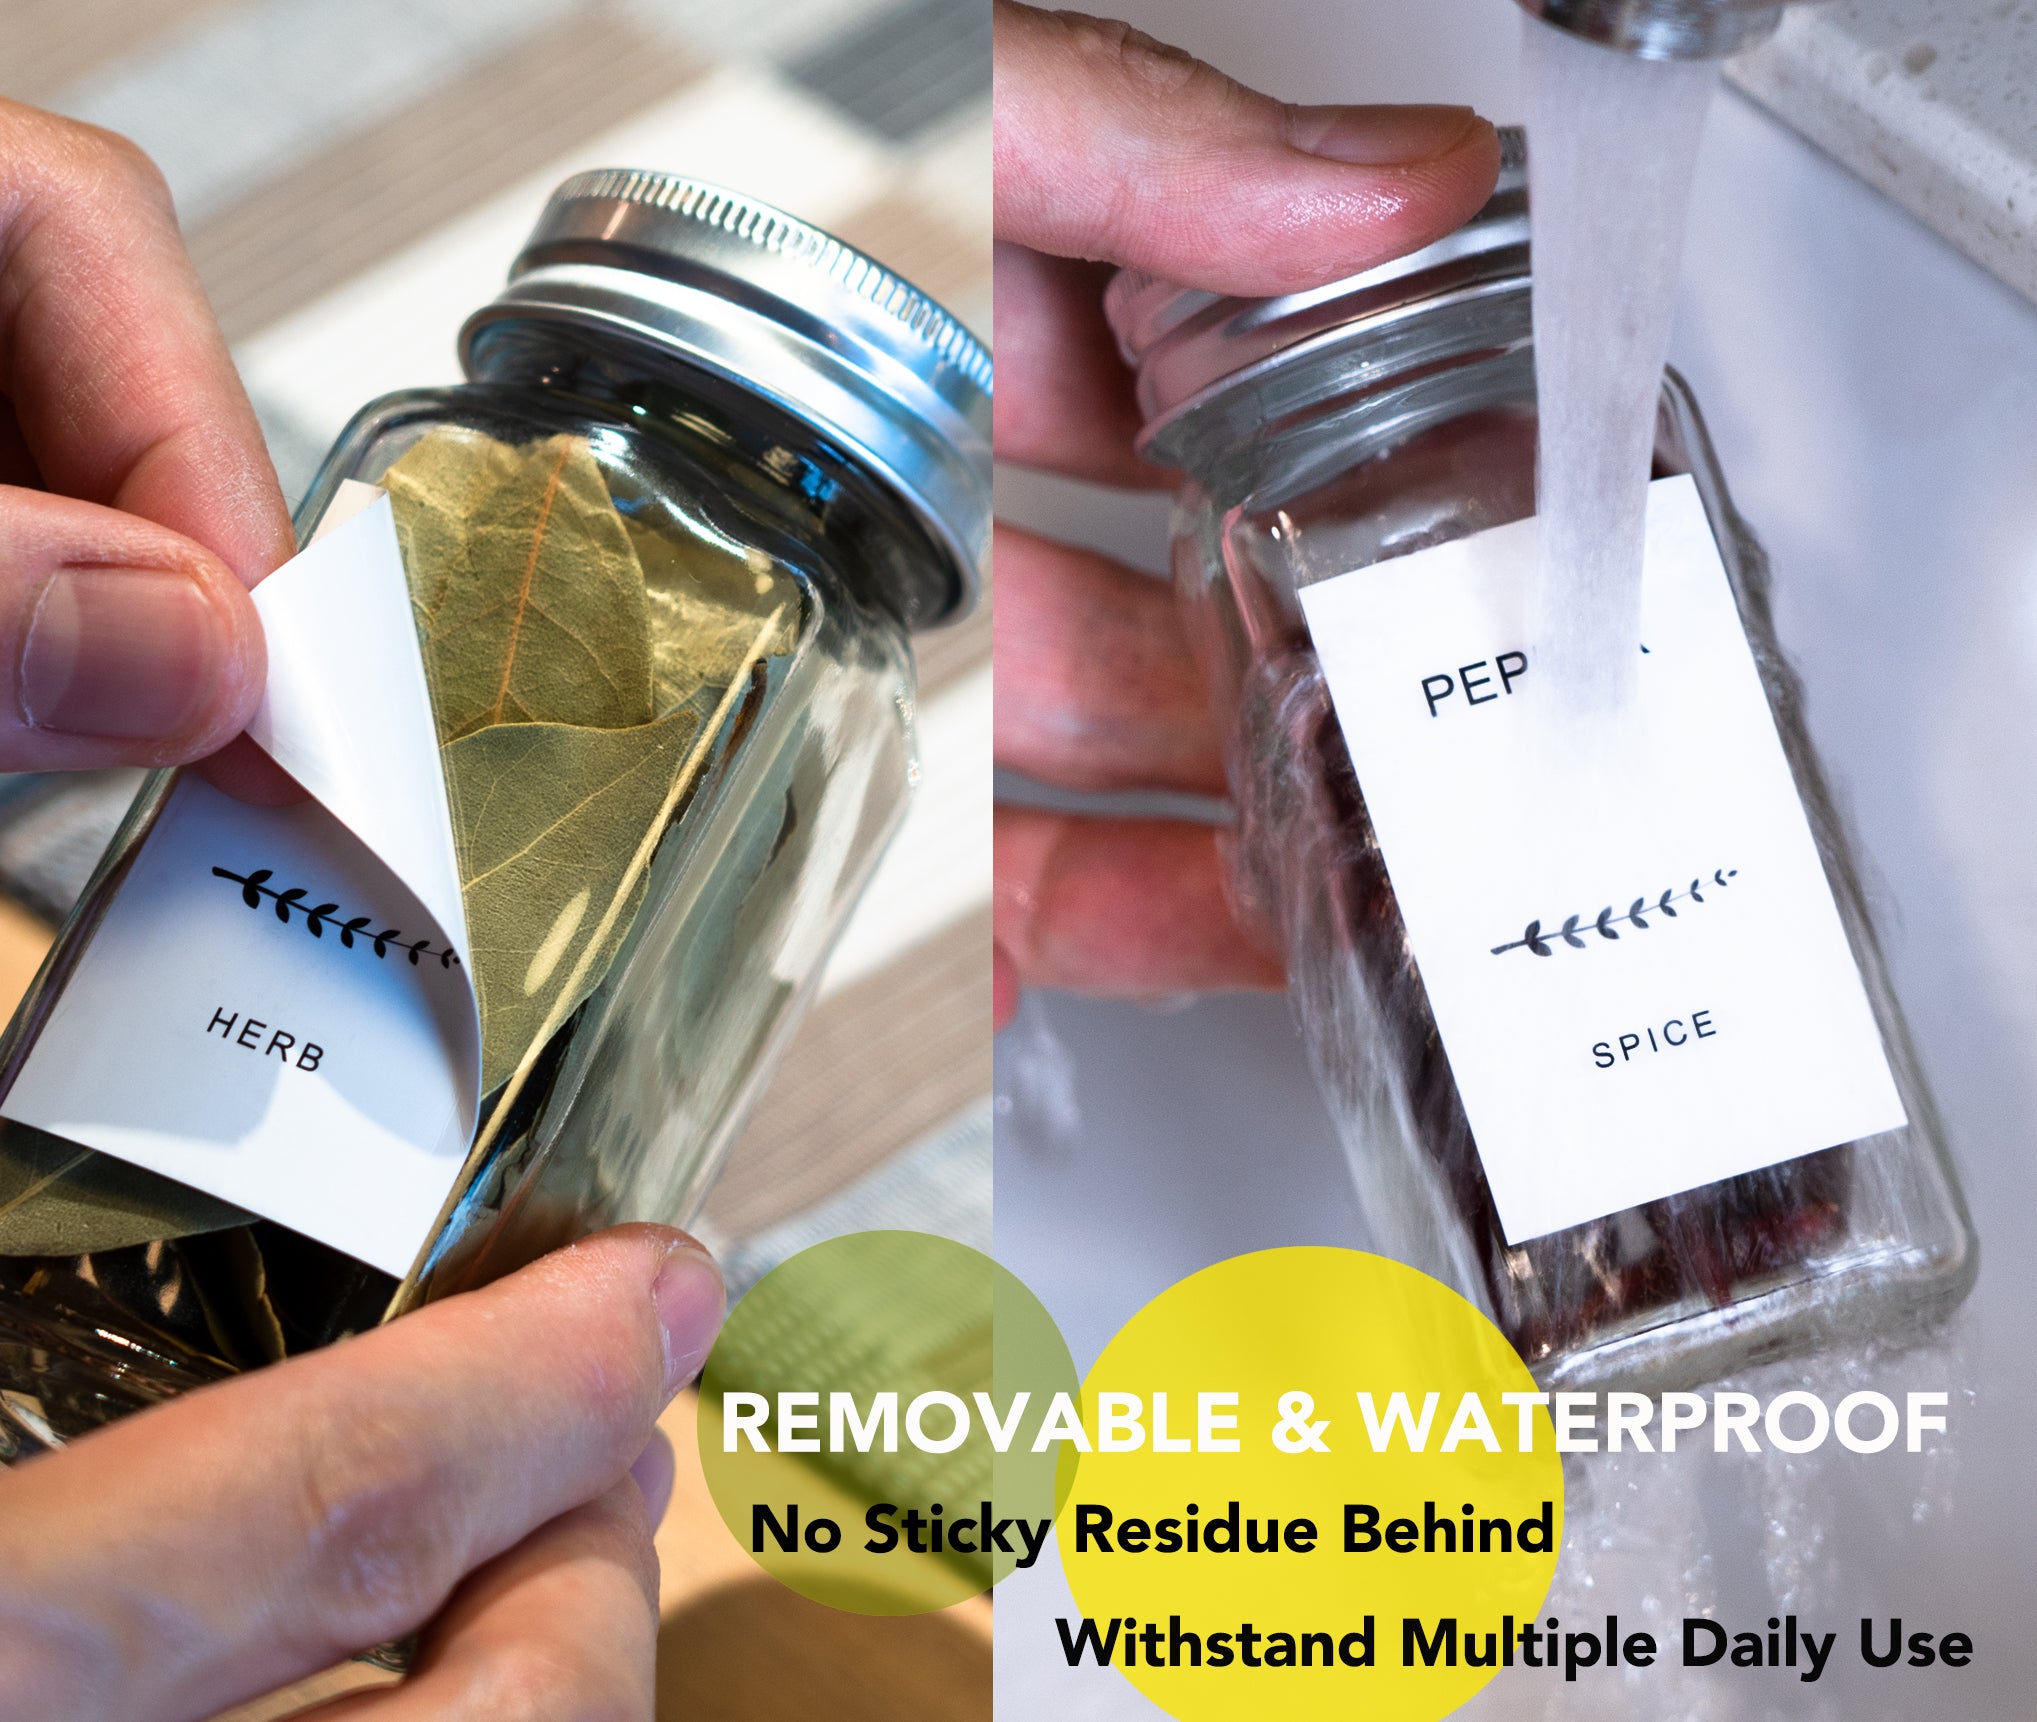 160 Waterproof Spice Jar Labels Preprinted - Deals Finders